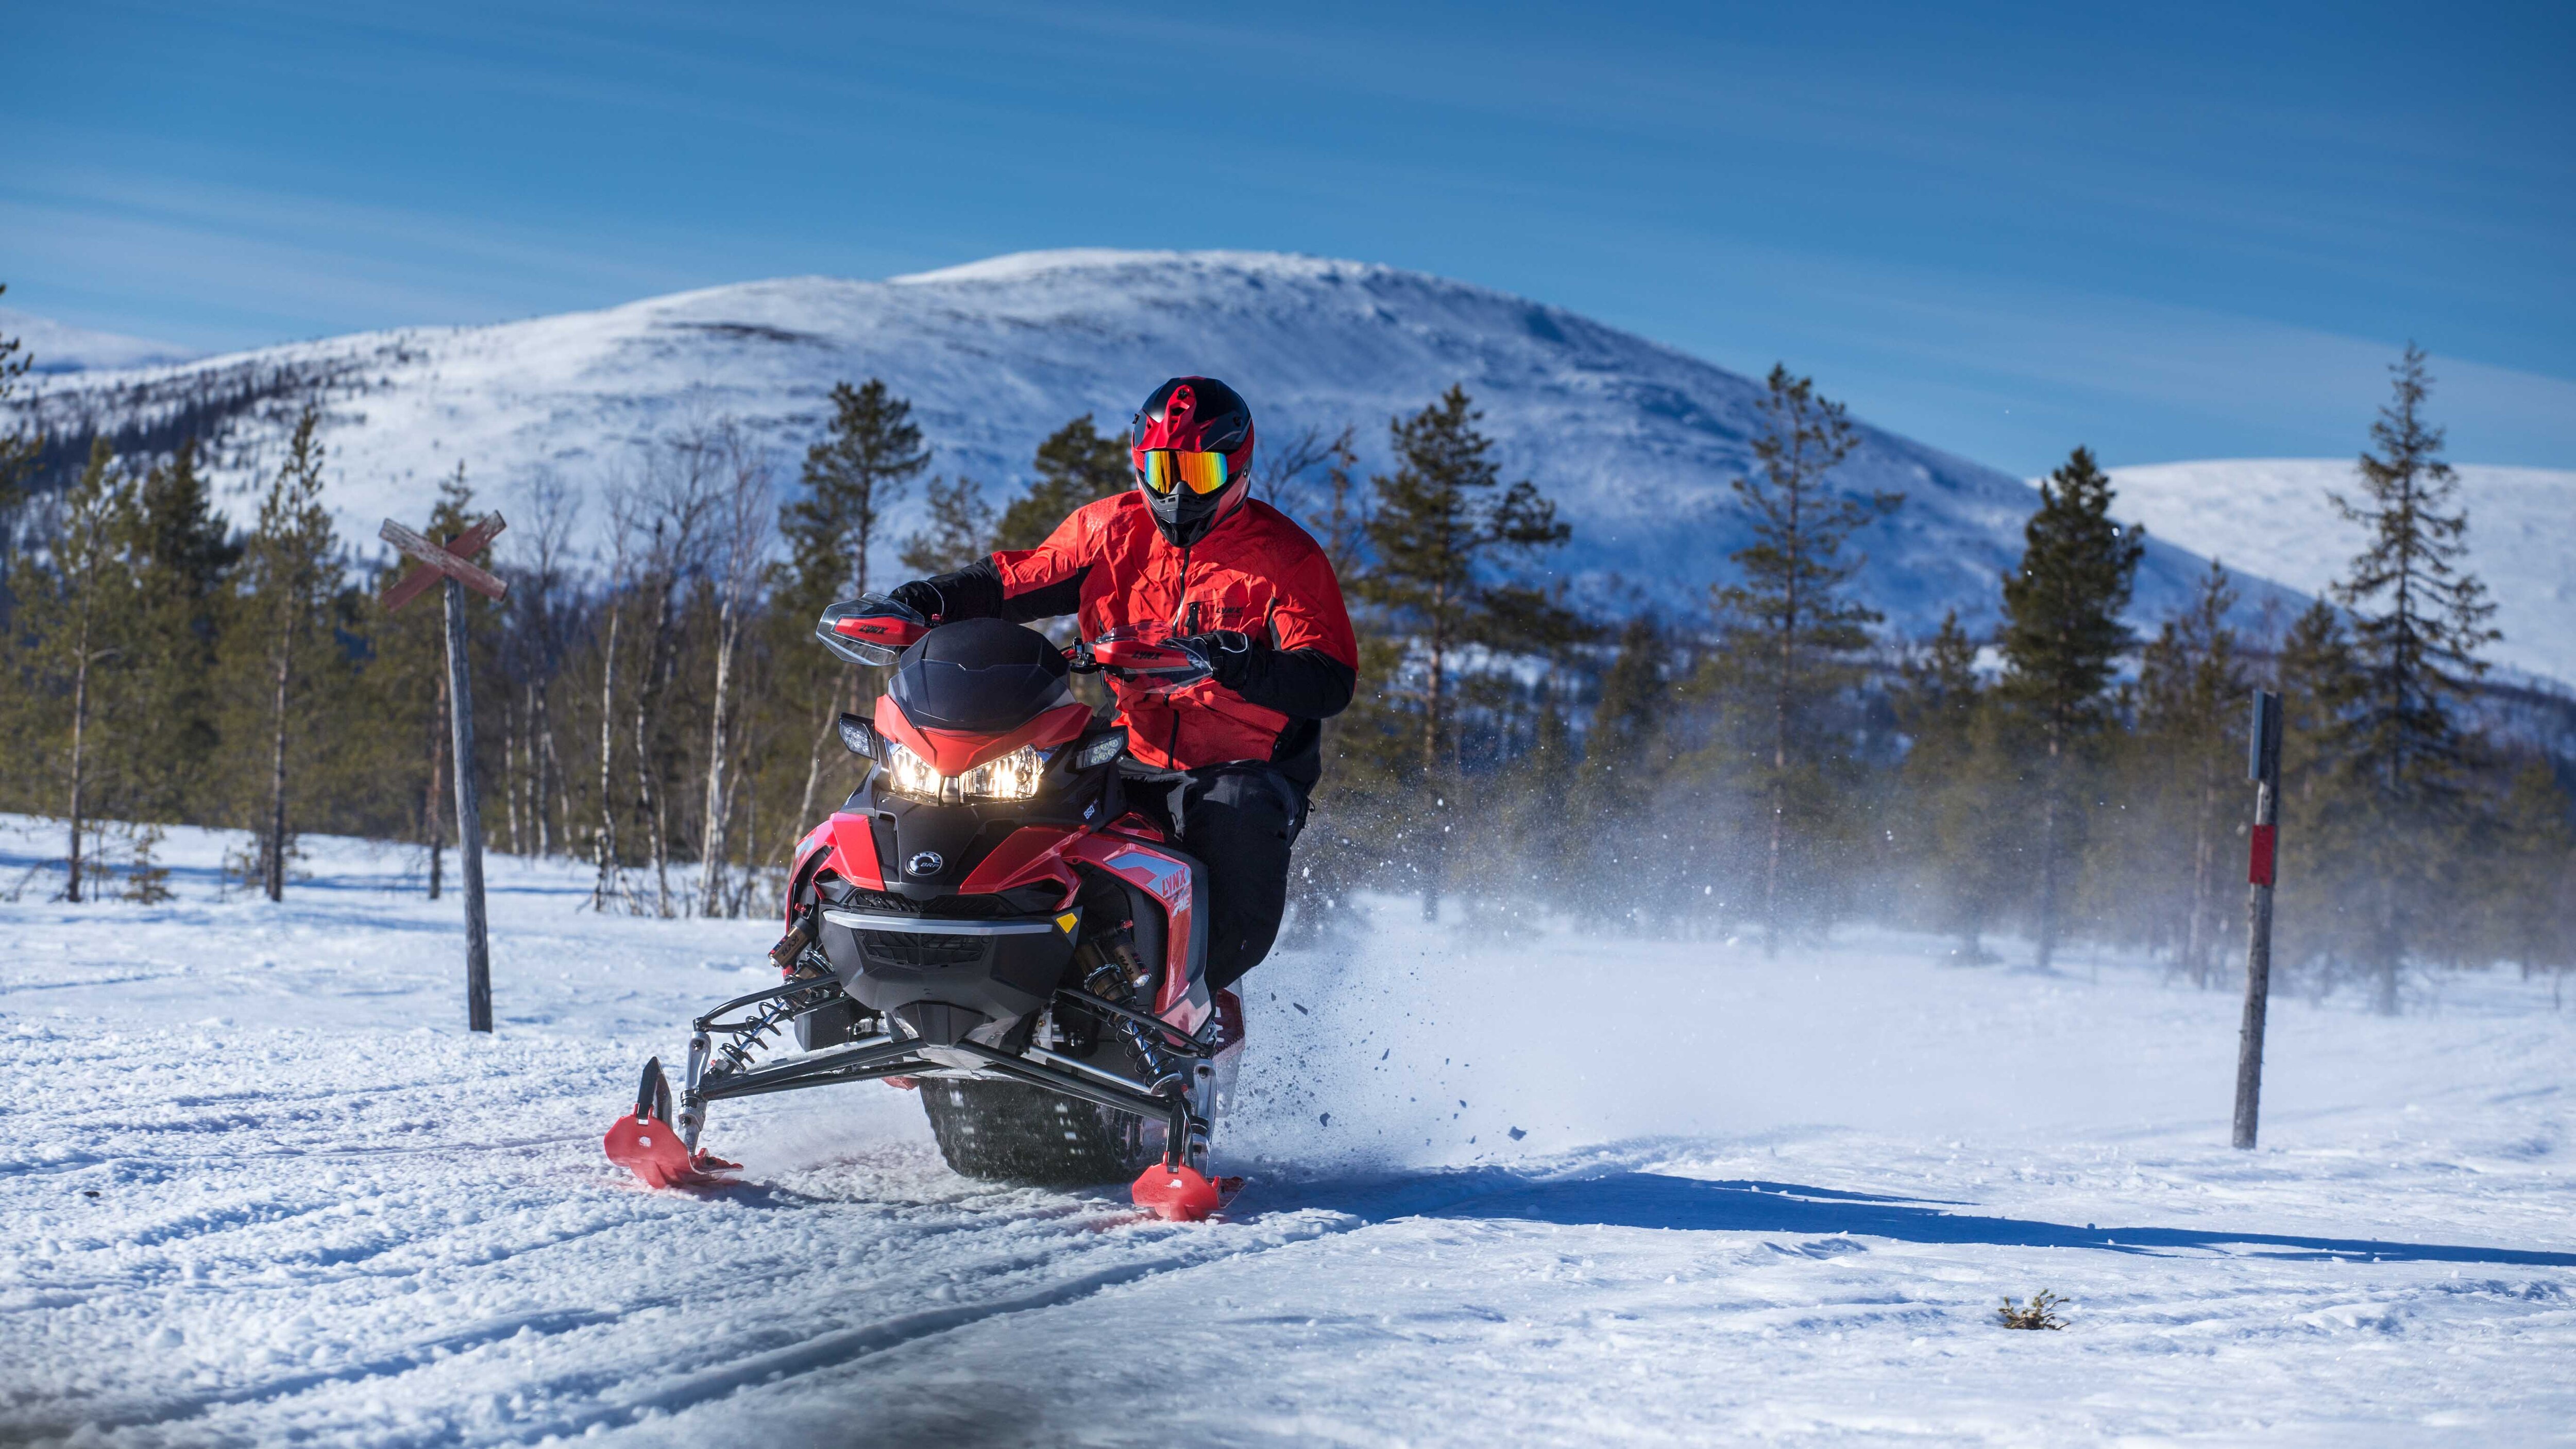 Fotbollsspelaren Sami Hyypiä Lynx snöskoterkörning på spår med utsikt över bergen